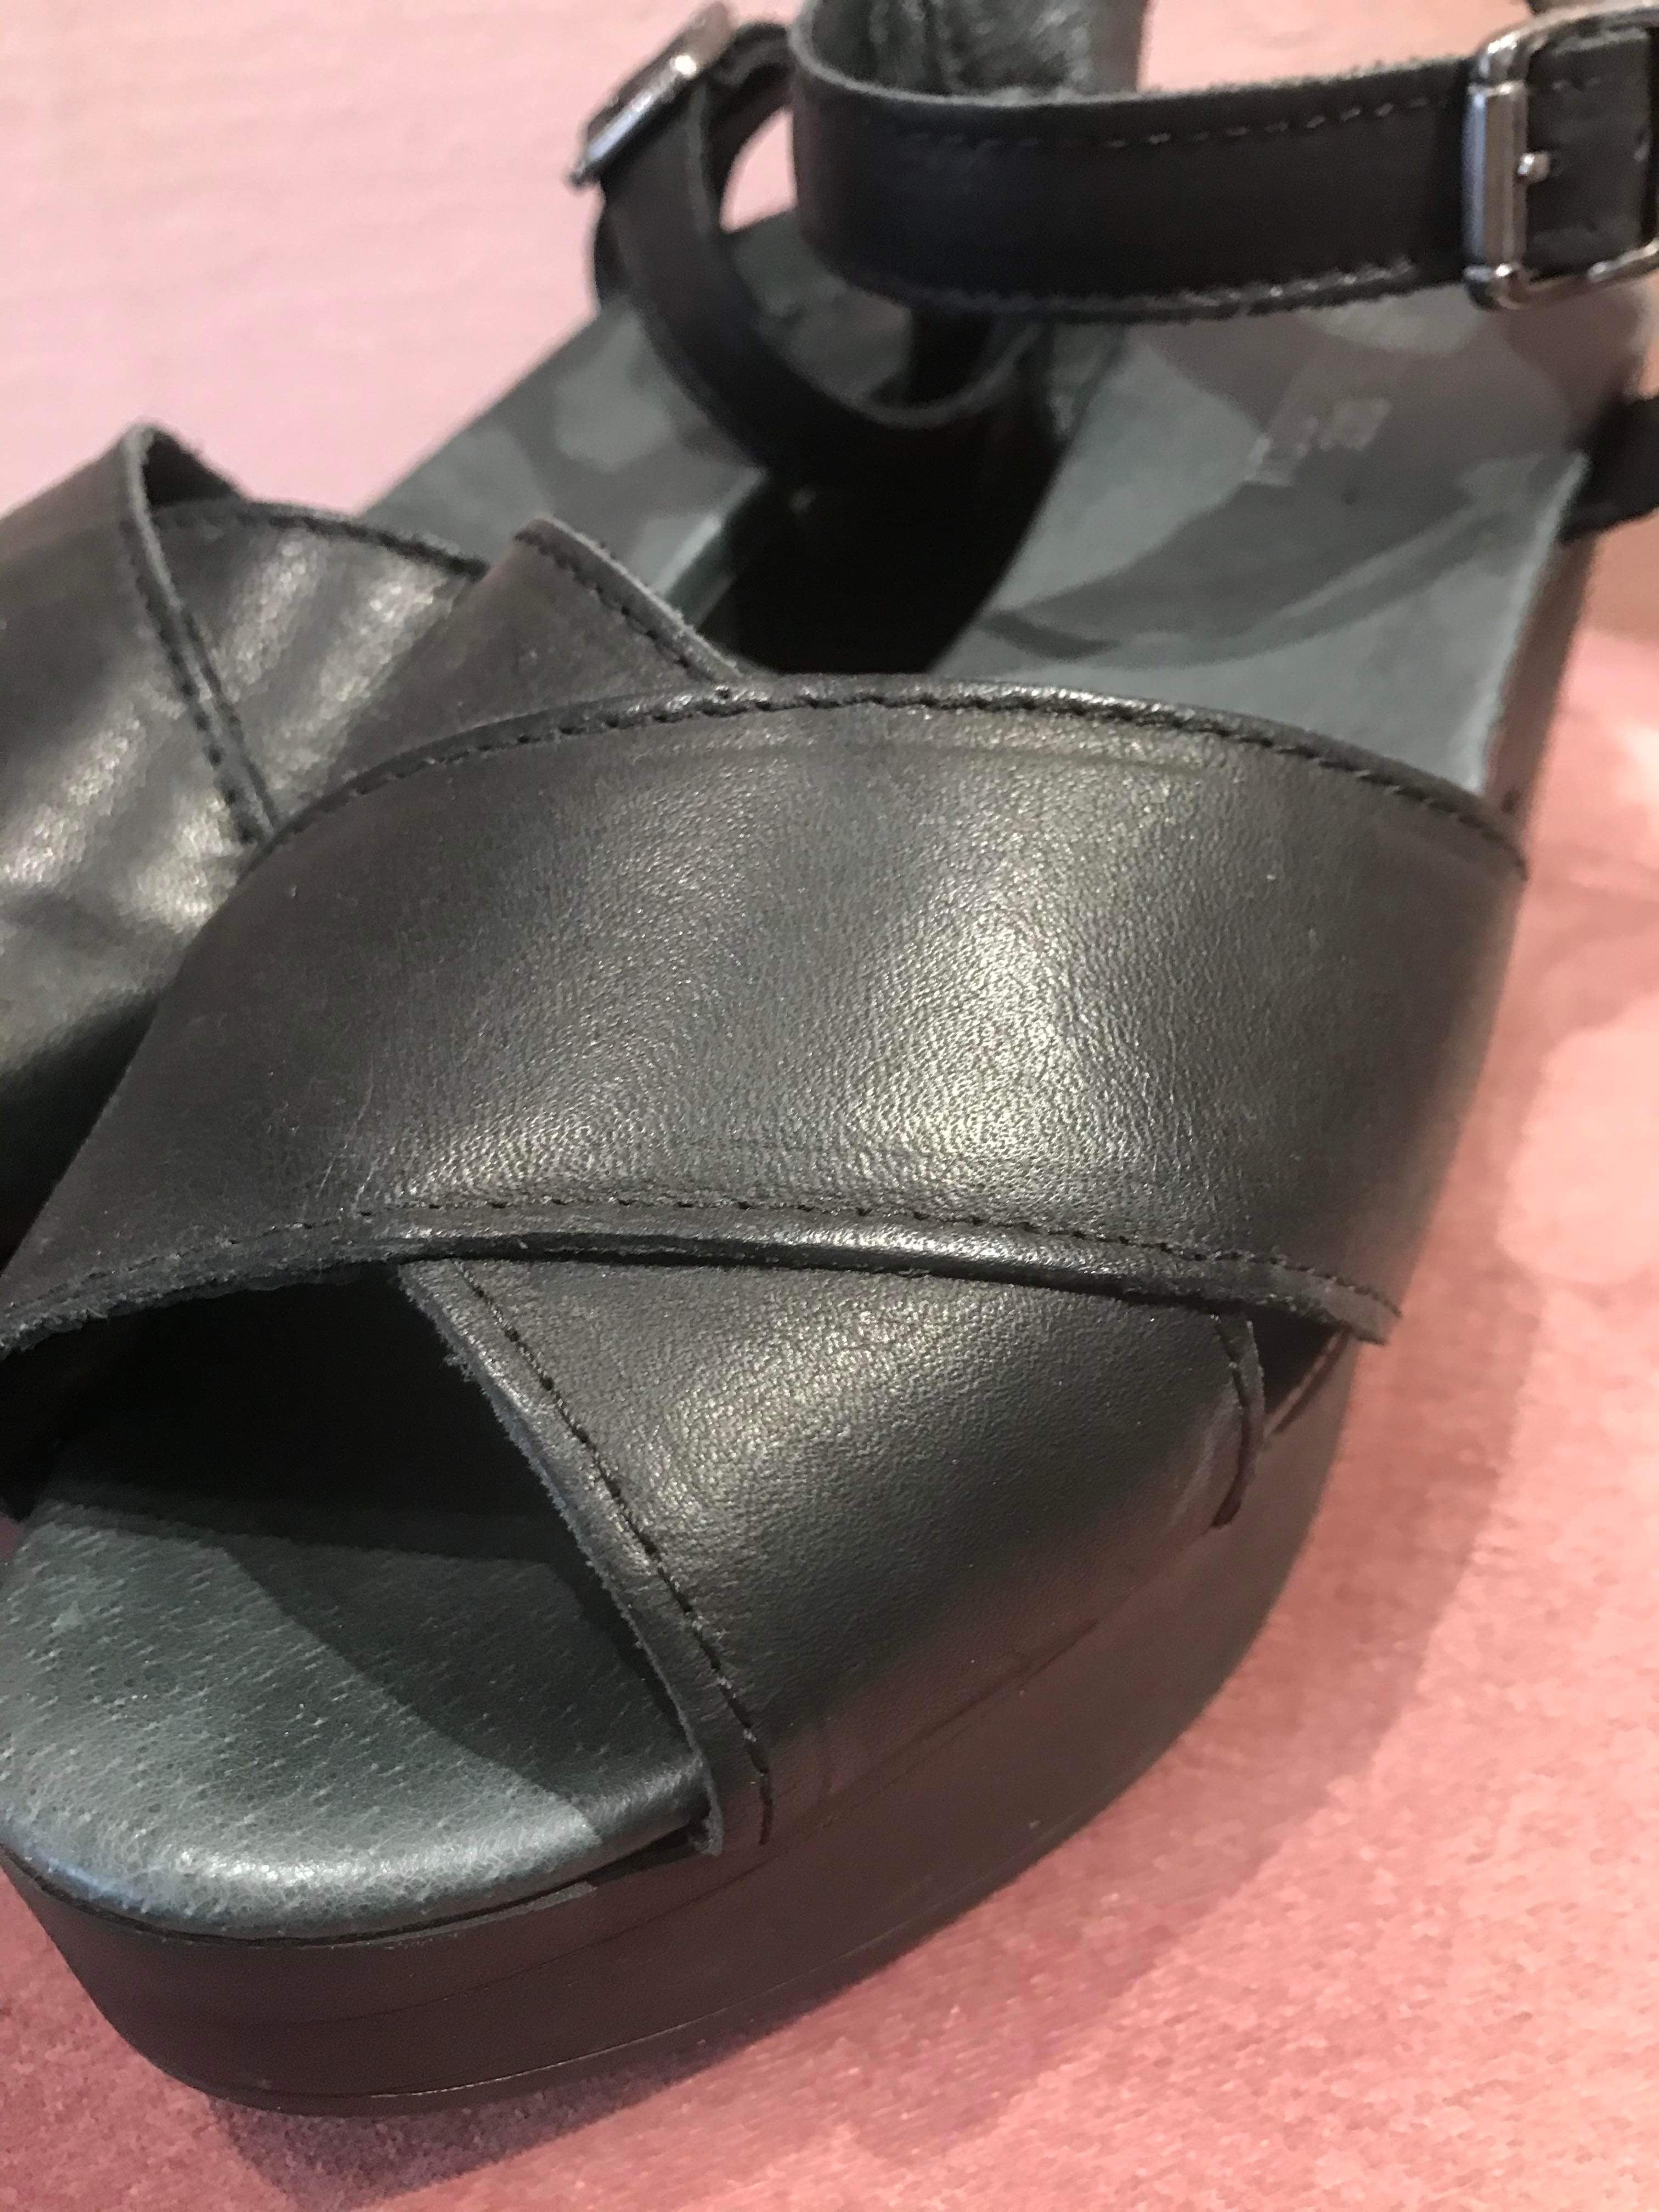 Shoe Biz - Sandaler